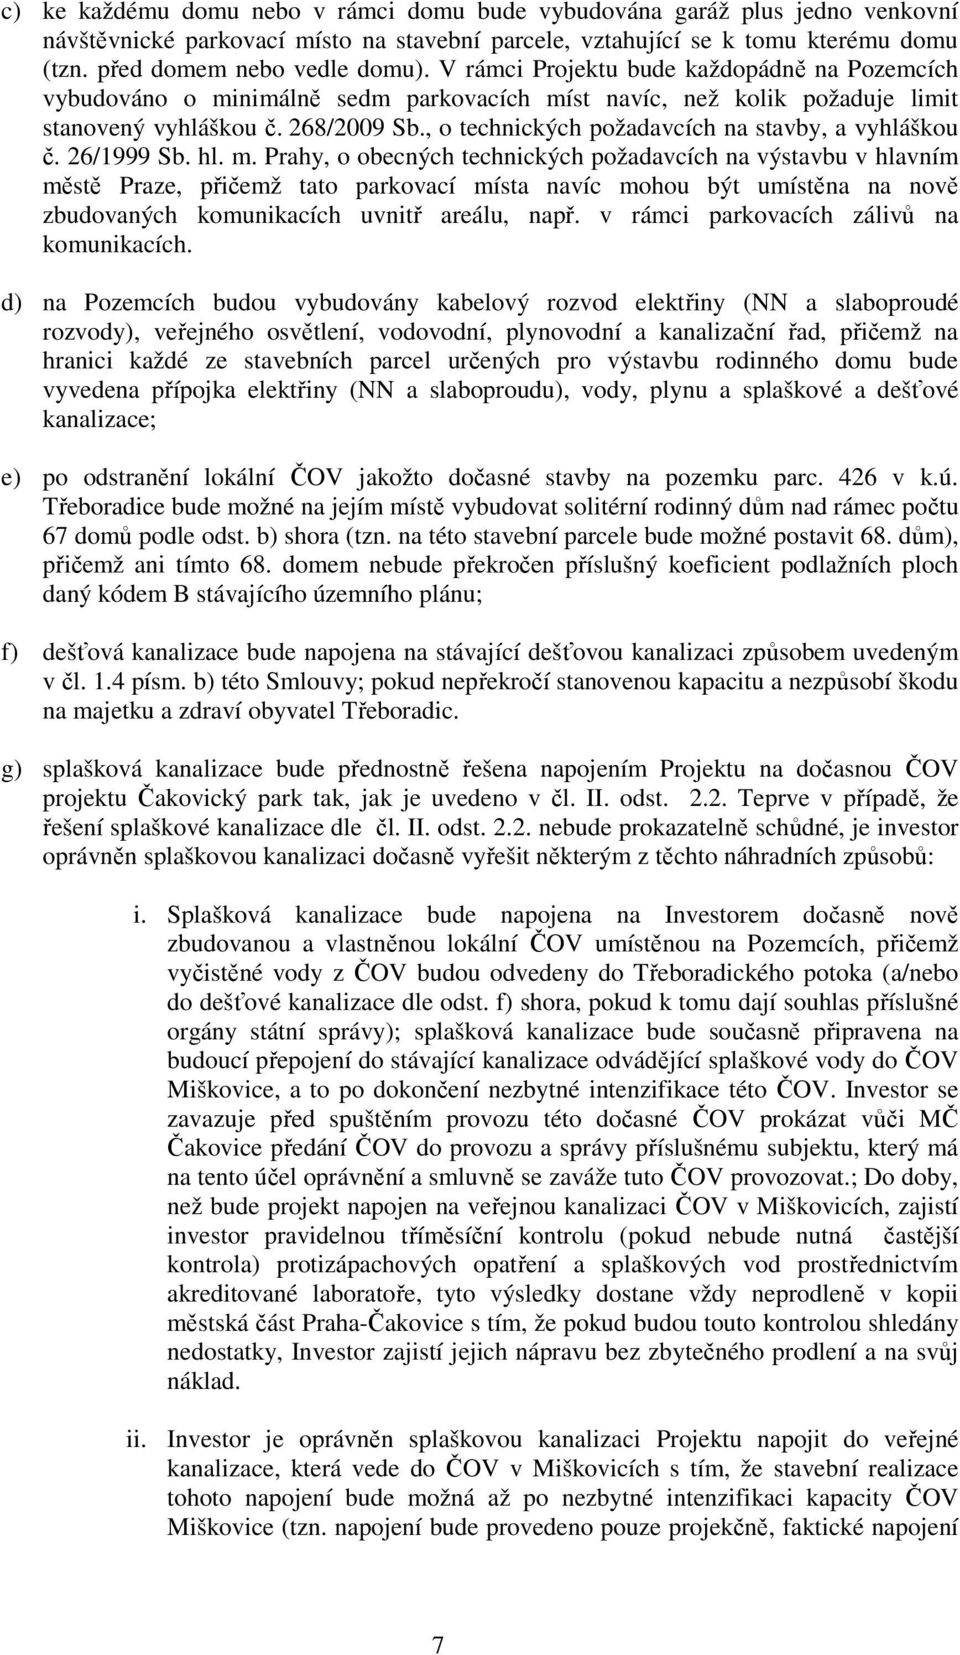 , o technických požadavcích na stavby, a vyhláškou č. 26/1999 Sb. hl. m.